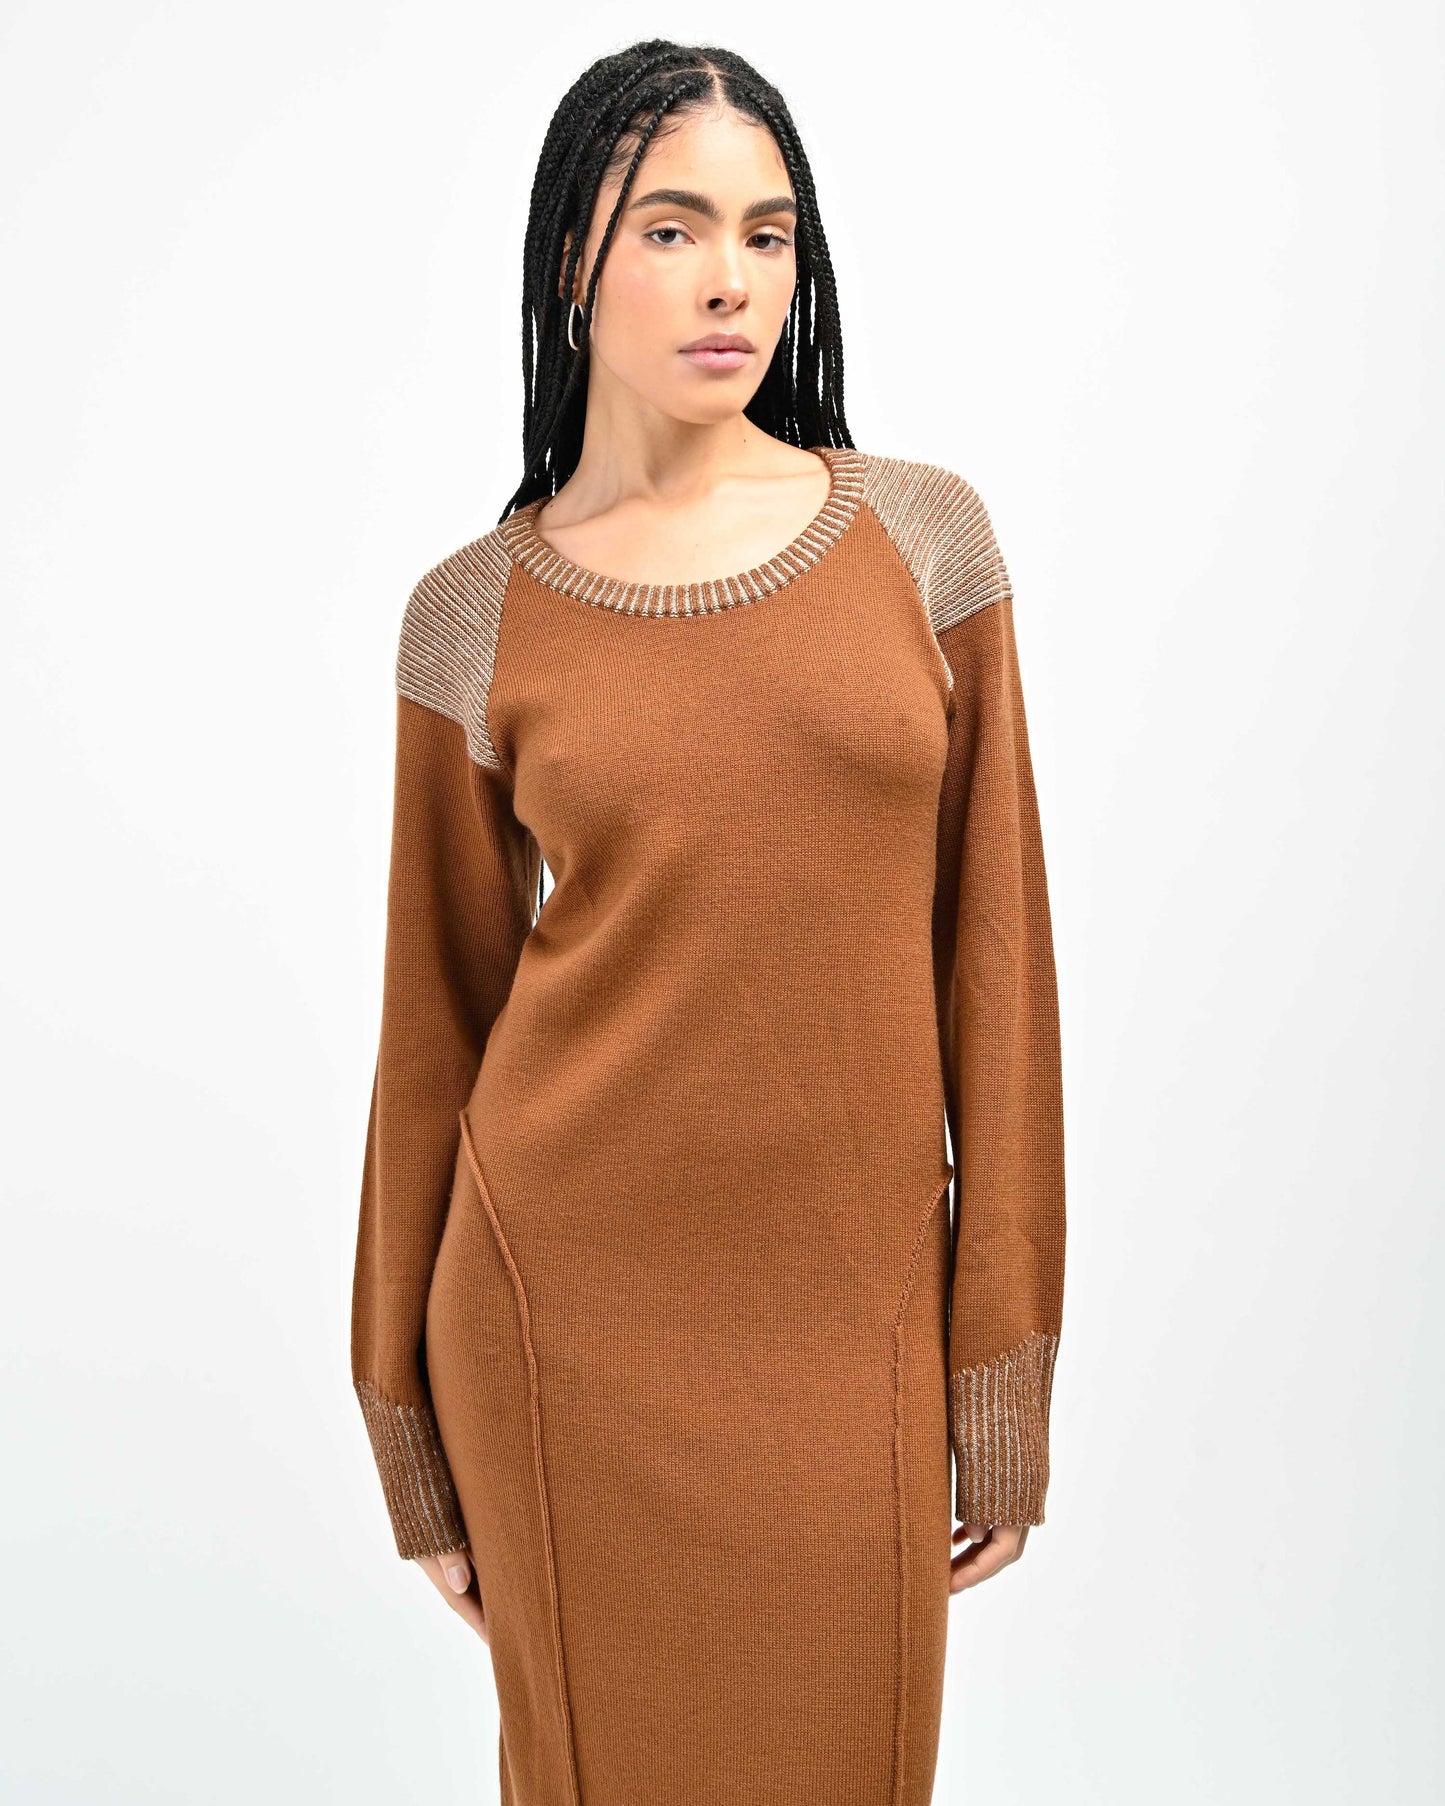 Closer View of Model wearing Lola Open Back Dress in Copper by Aseye Studio